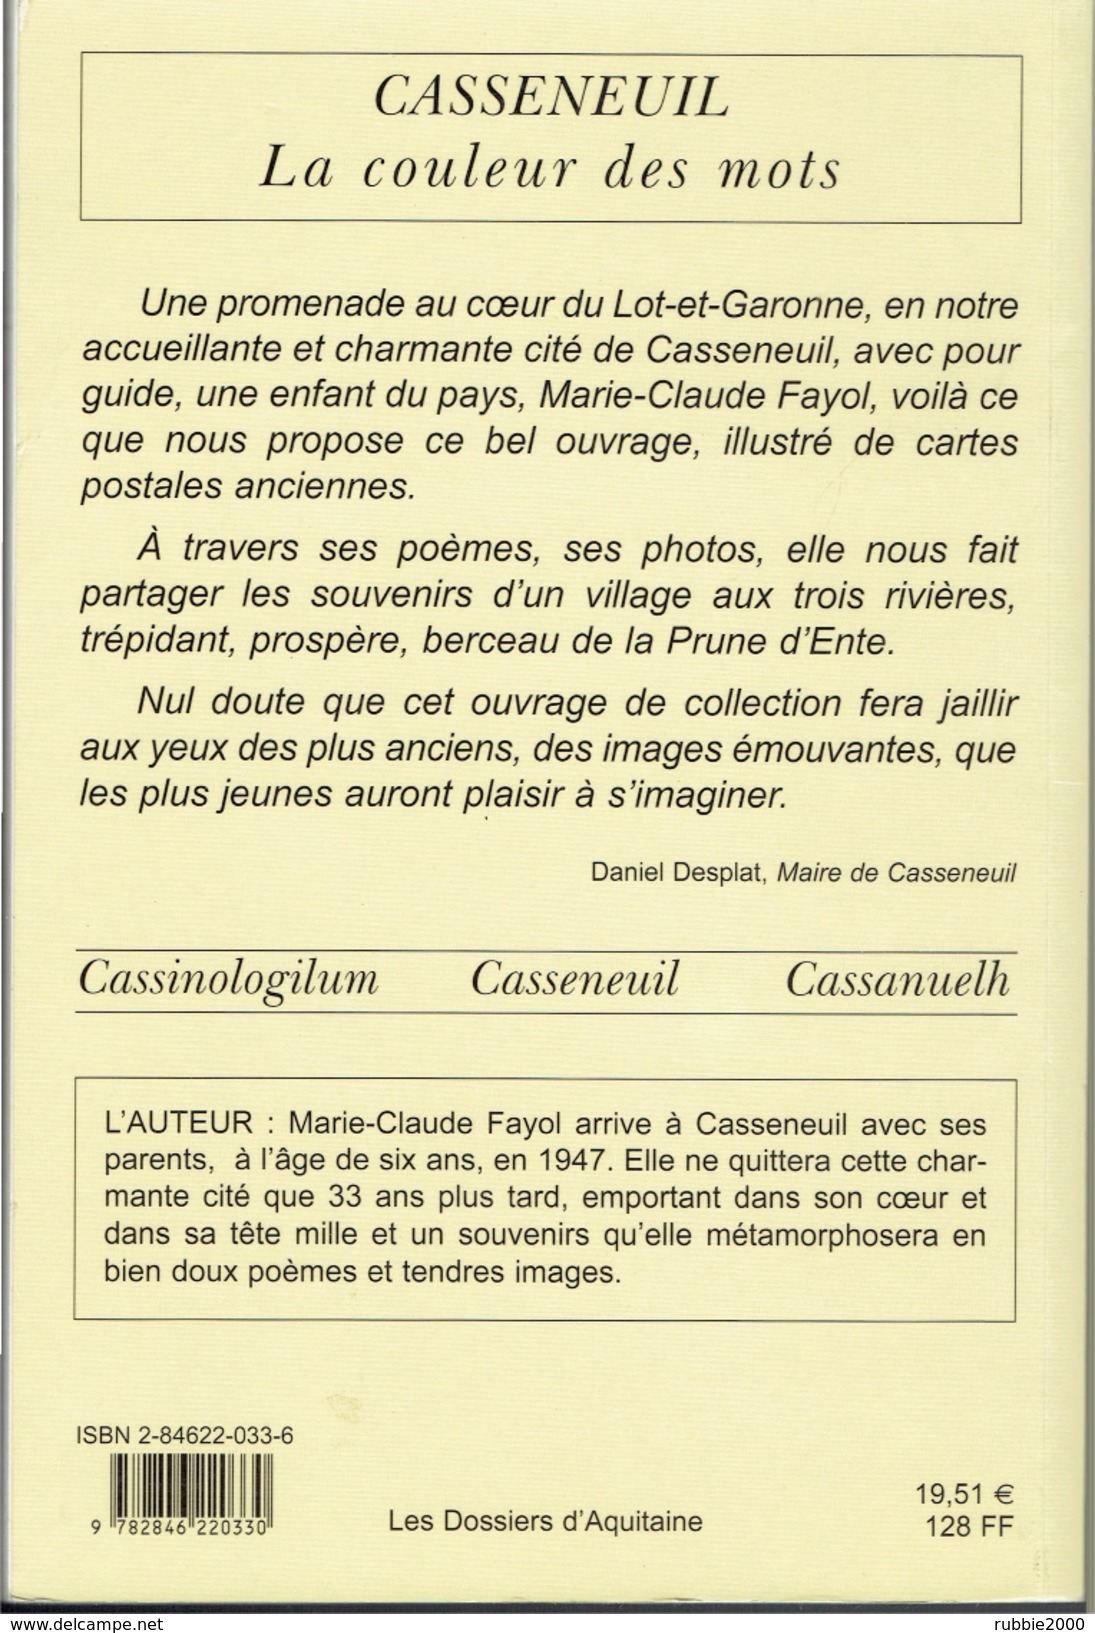 CASSENEUIL LES CHEMINS DE L ENFANCE PAR MARIE CLAUDE FAYOL 2001 LOT ET GARONNE LES DOSSIERS D AQUITAINE - Aquitaine